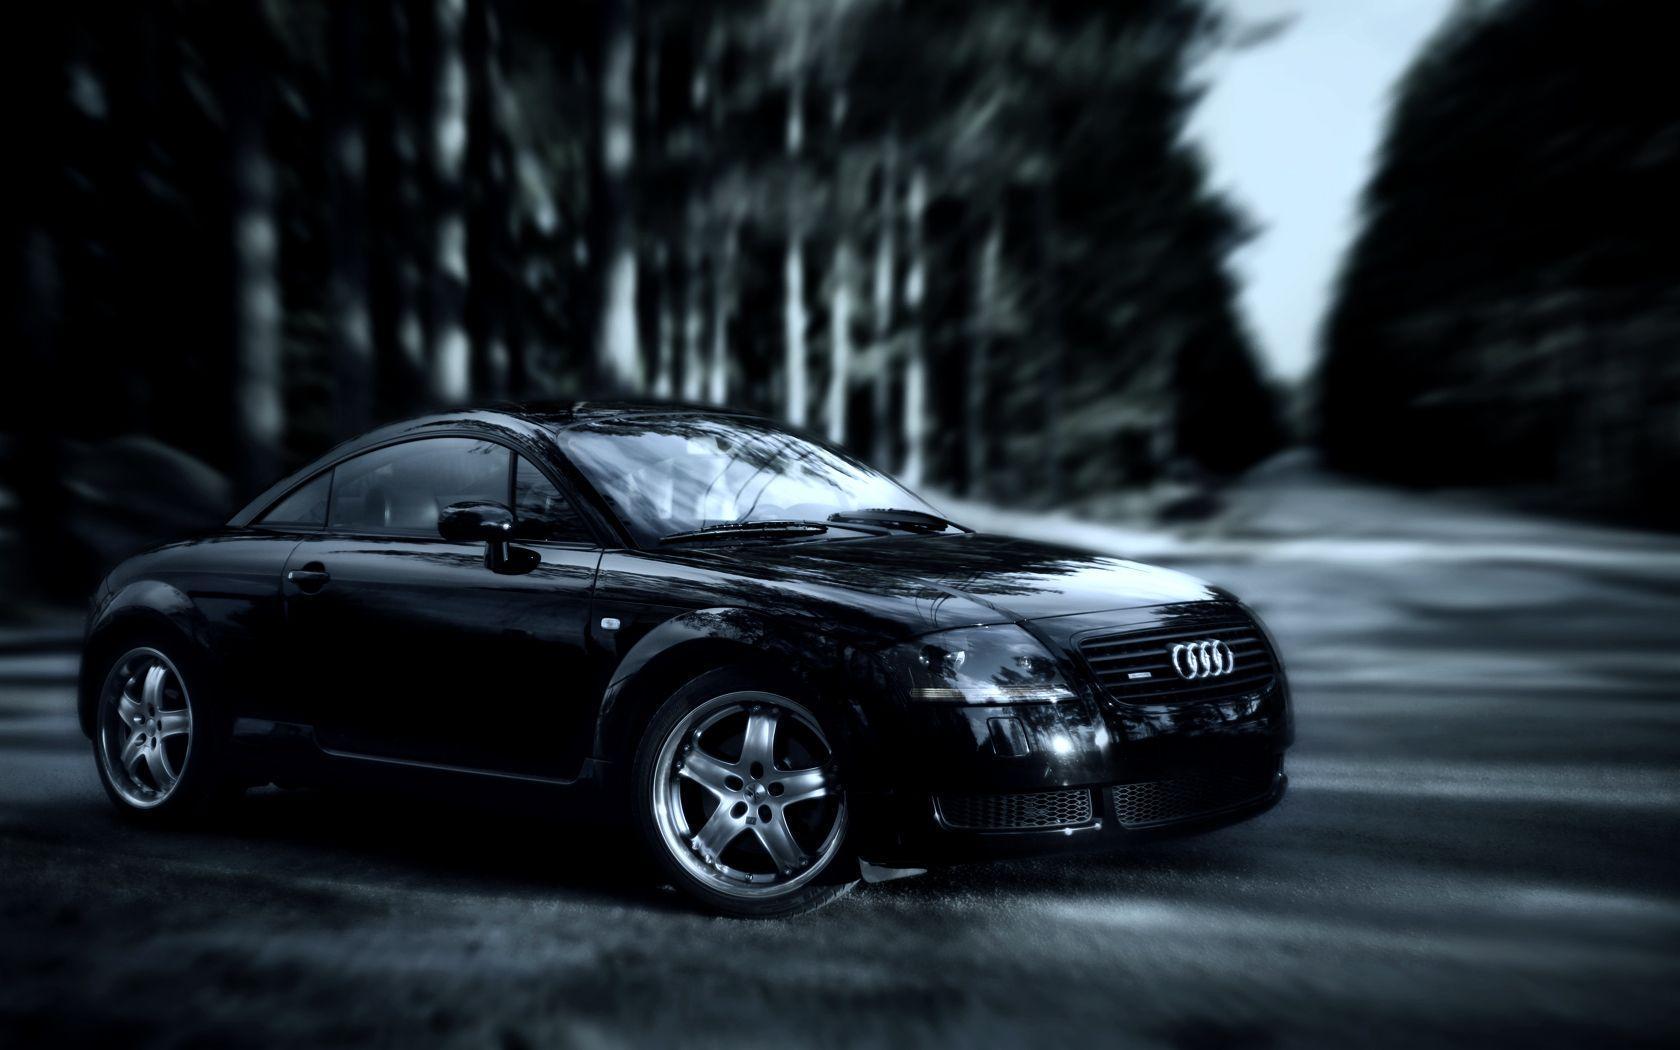 Audi TT Black #Hd #Cars. Audi Wallpaper. Audi TT